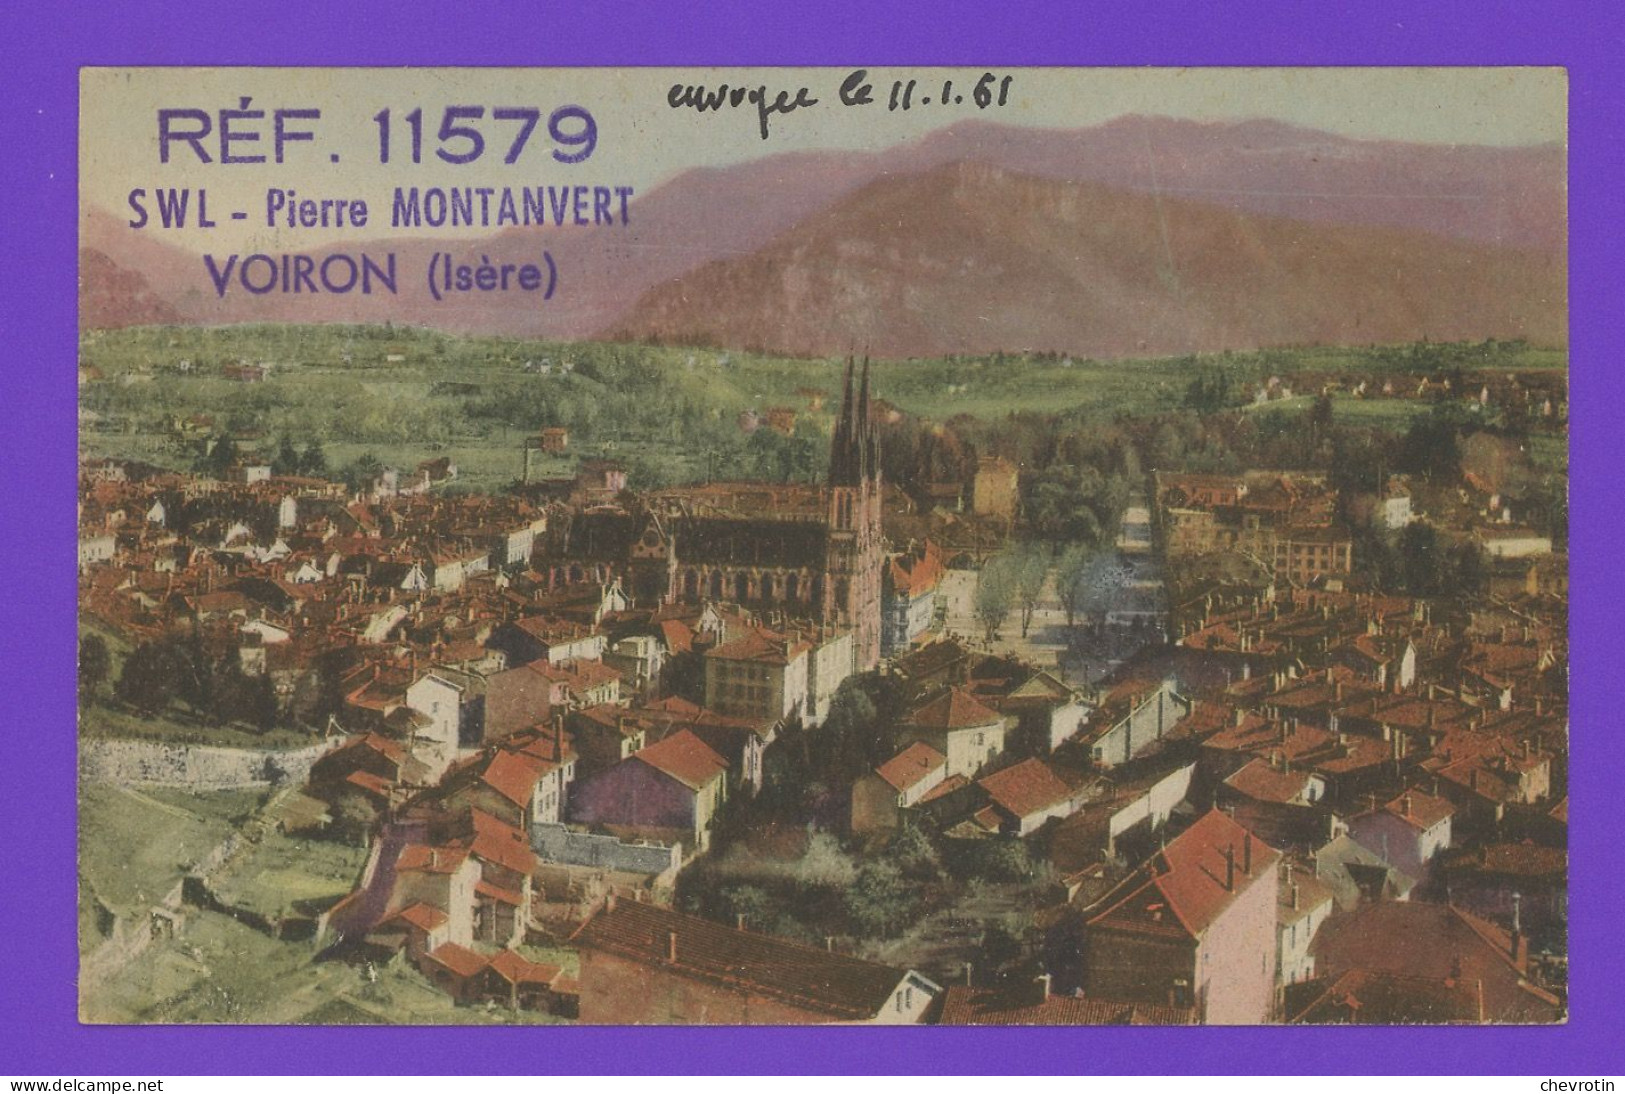 Carte Postale Avec Coordonnées Radio Postée à Voiron. Réf. 11579 SWL Pierre Montanvert. - Radio